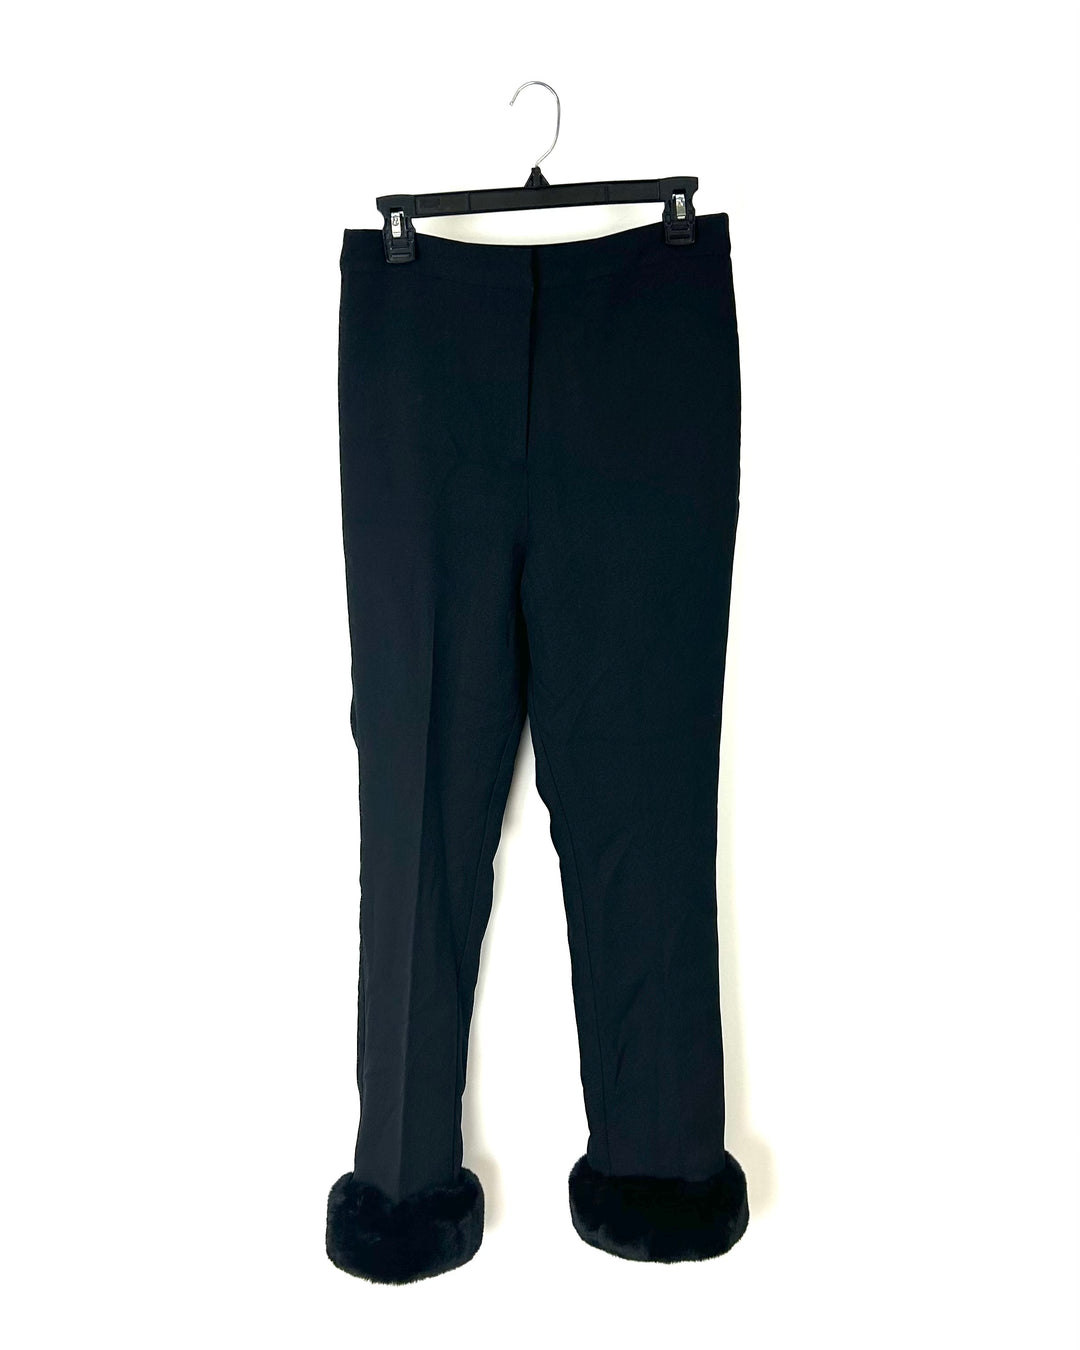 Black Dress Pants - Size 6, 12, 16